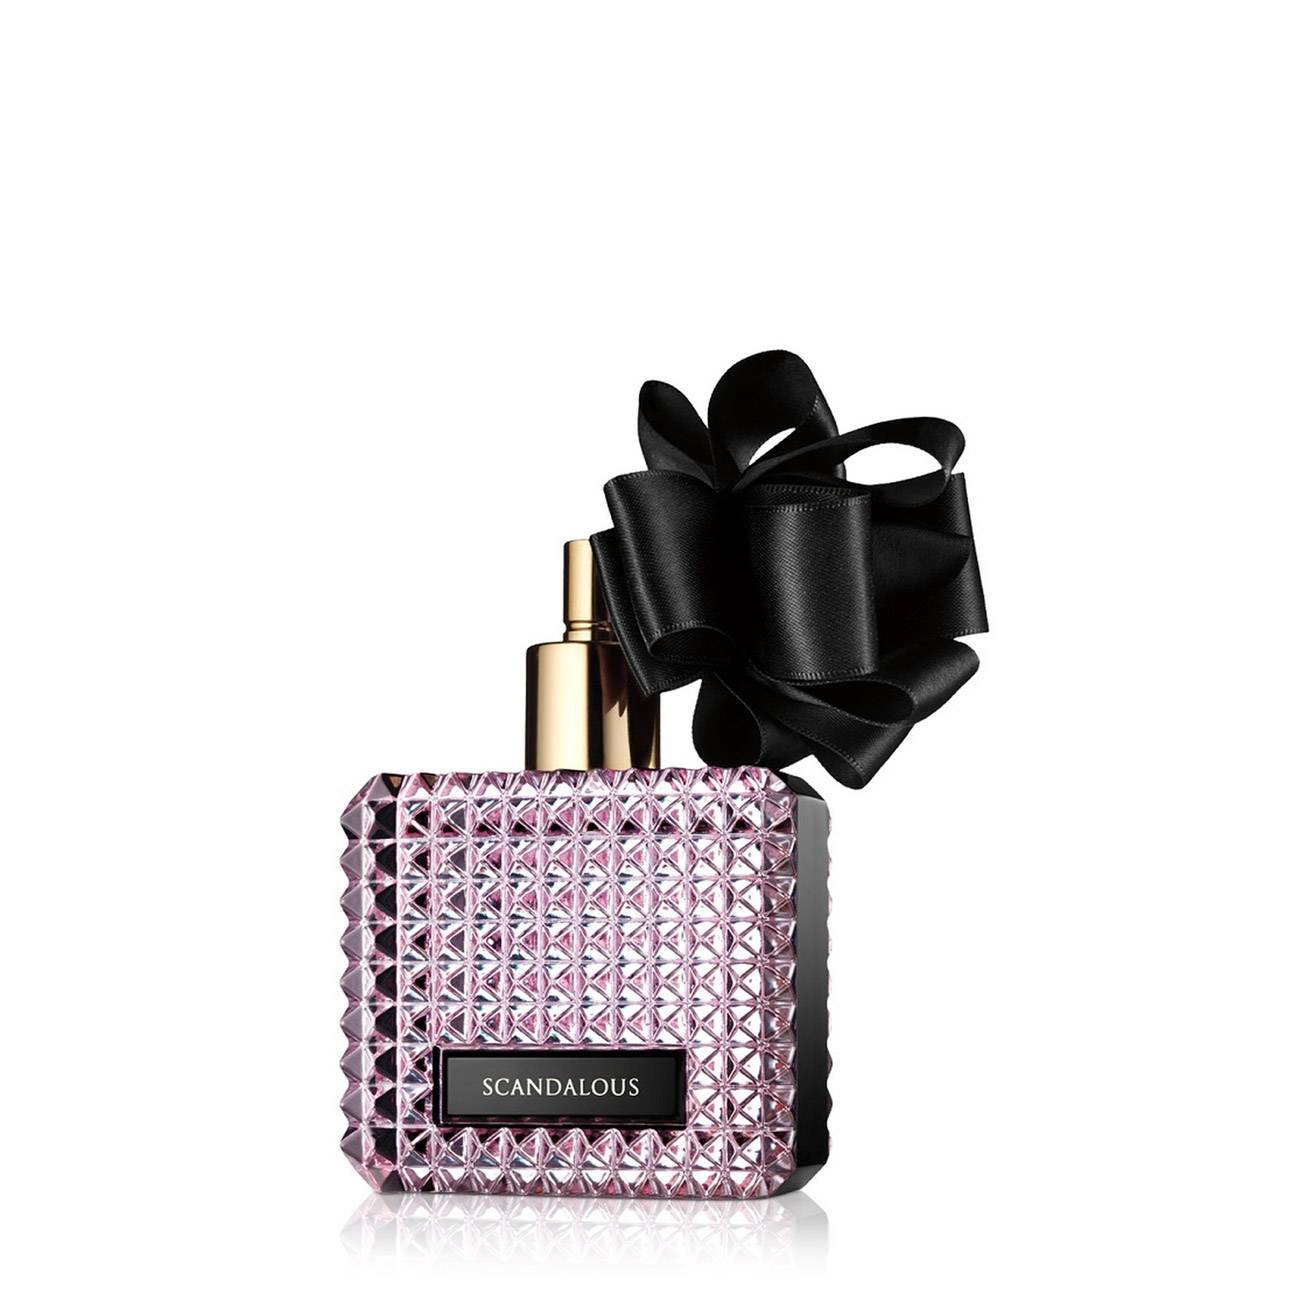 Apa de Parfum Victoria's Secret SCANDALOUS 50ml cu comanda online